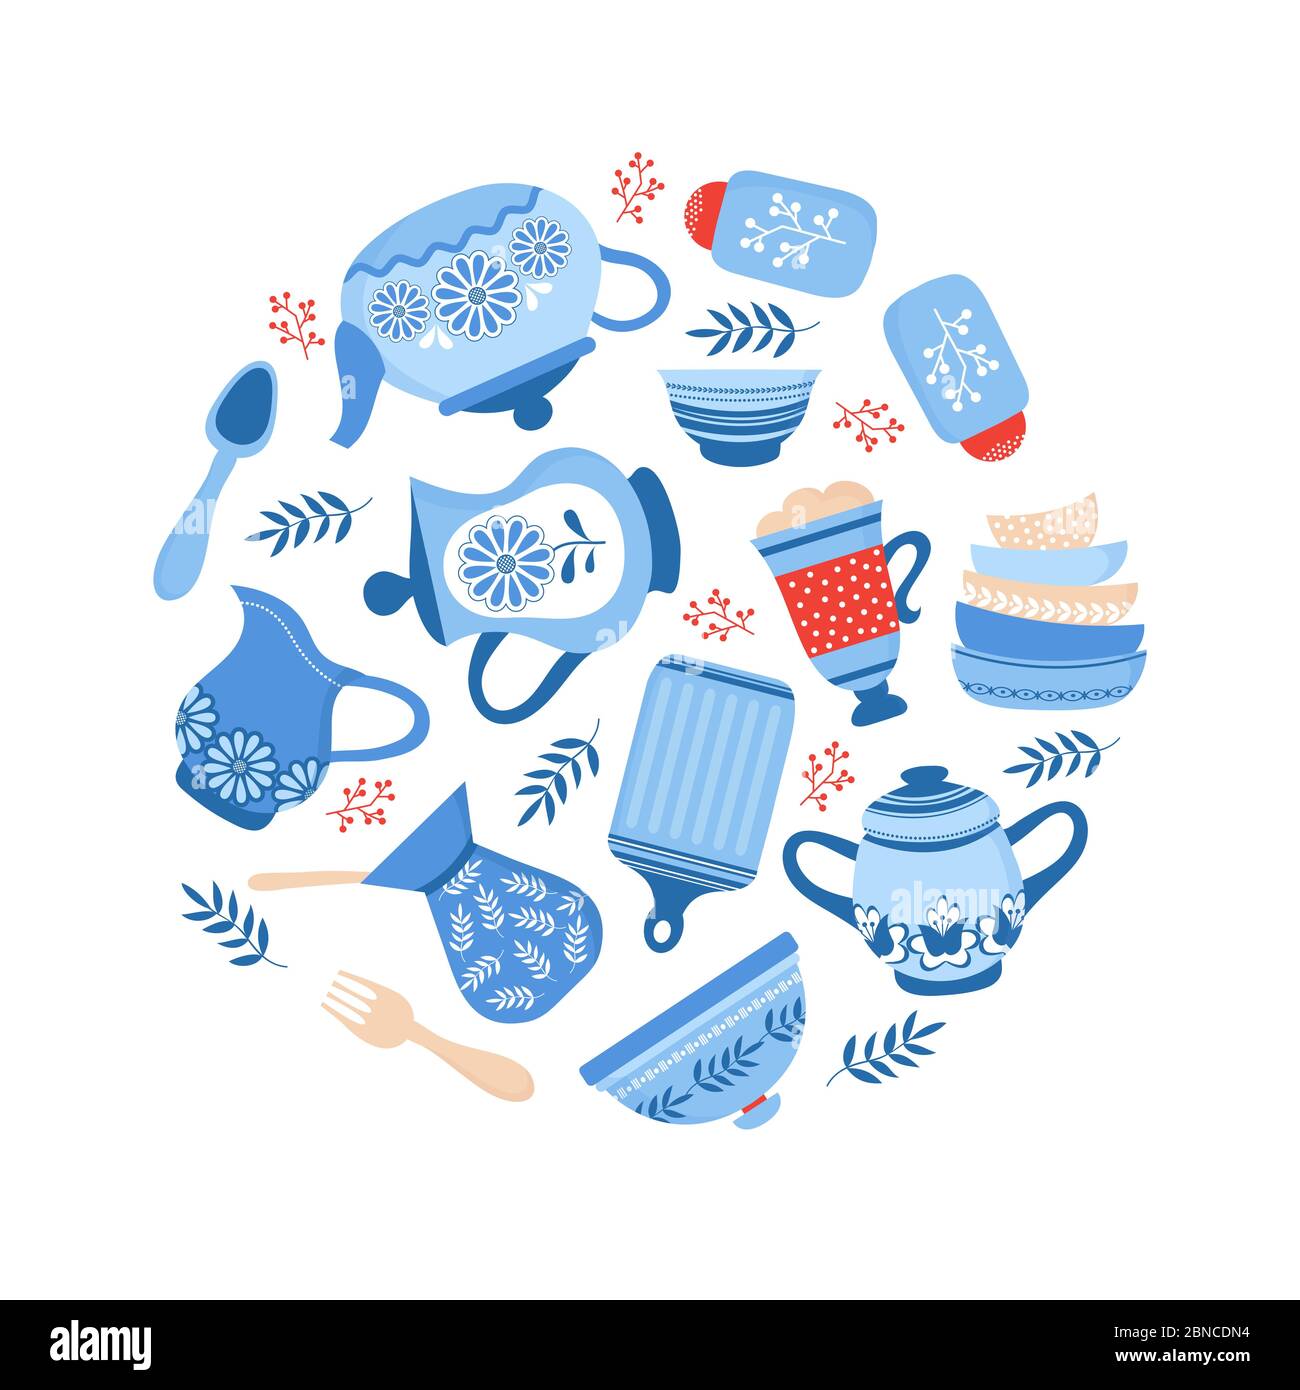 Geschirr Keramik Kochgeschirr. Blaue Porzellanschalen, Teller und Teller auf weißem Hintergrund isoliert. Vektor Kochgeschirr und Geschirr, Geschirr Keramik, Utensil und Geschirr Illustration Stock Vektor